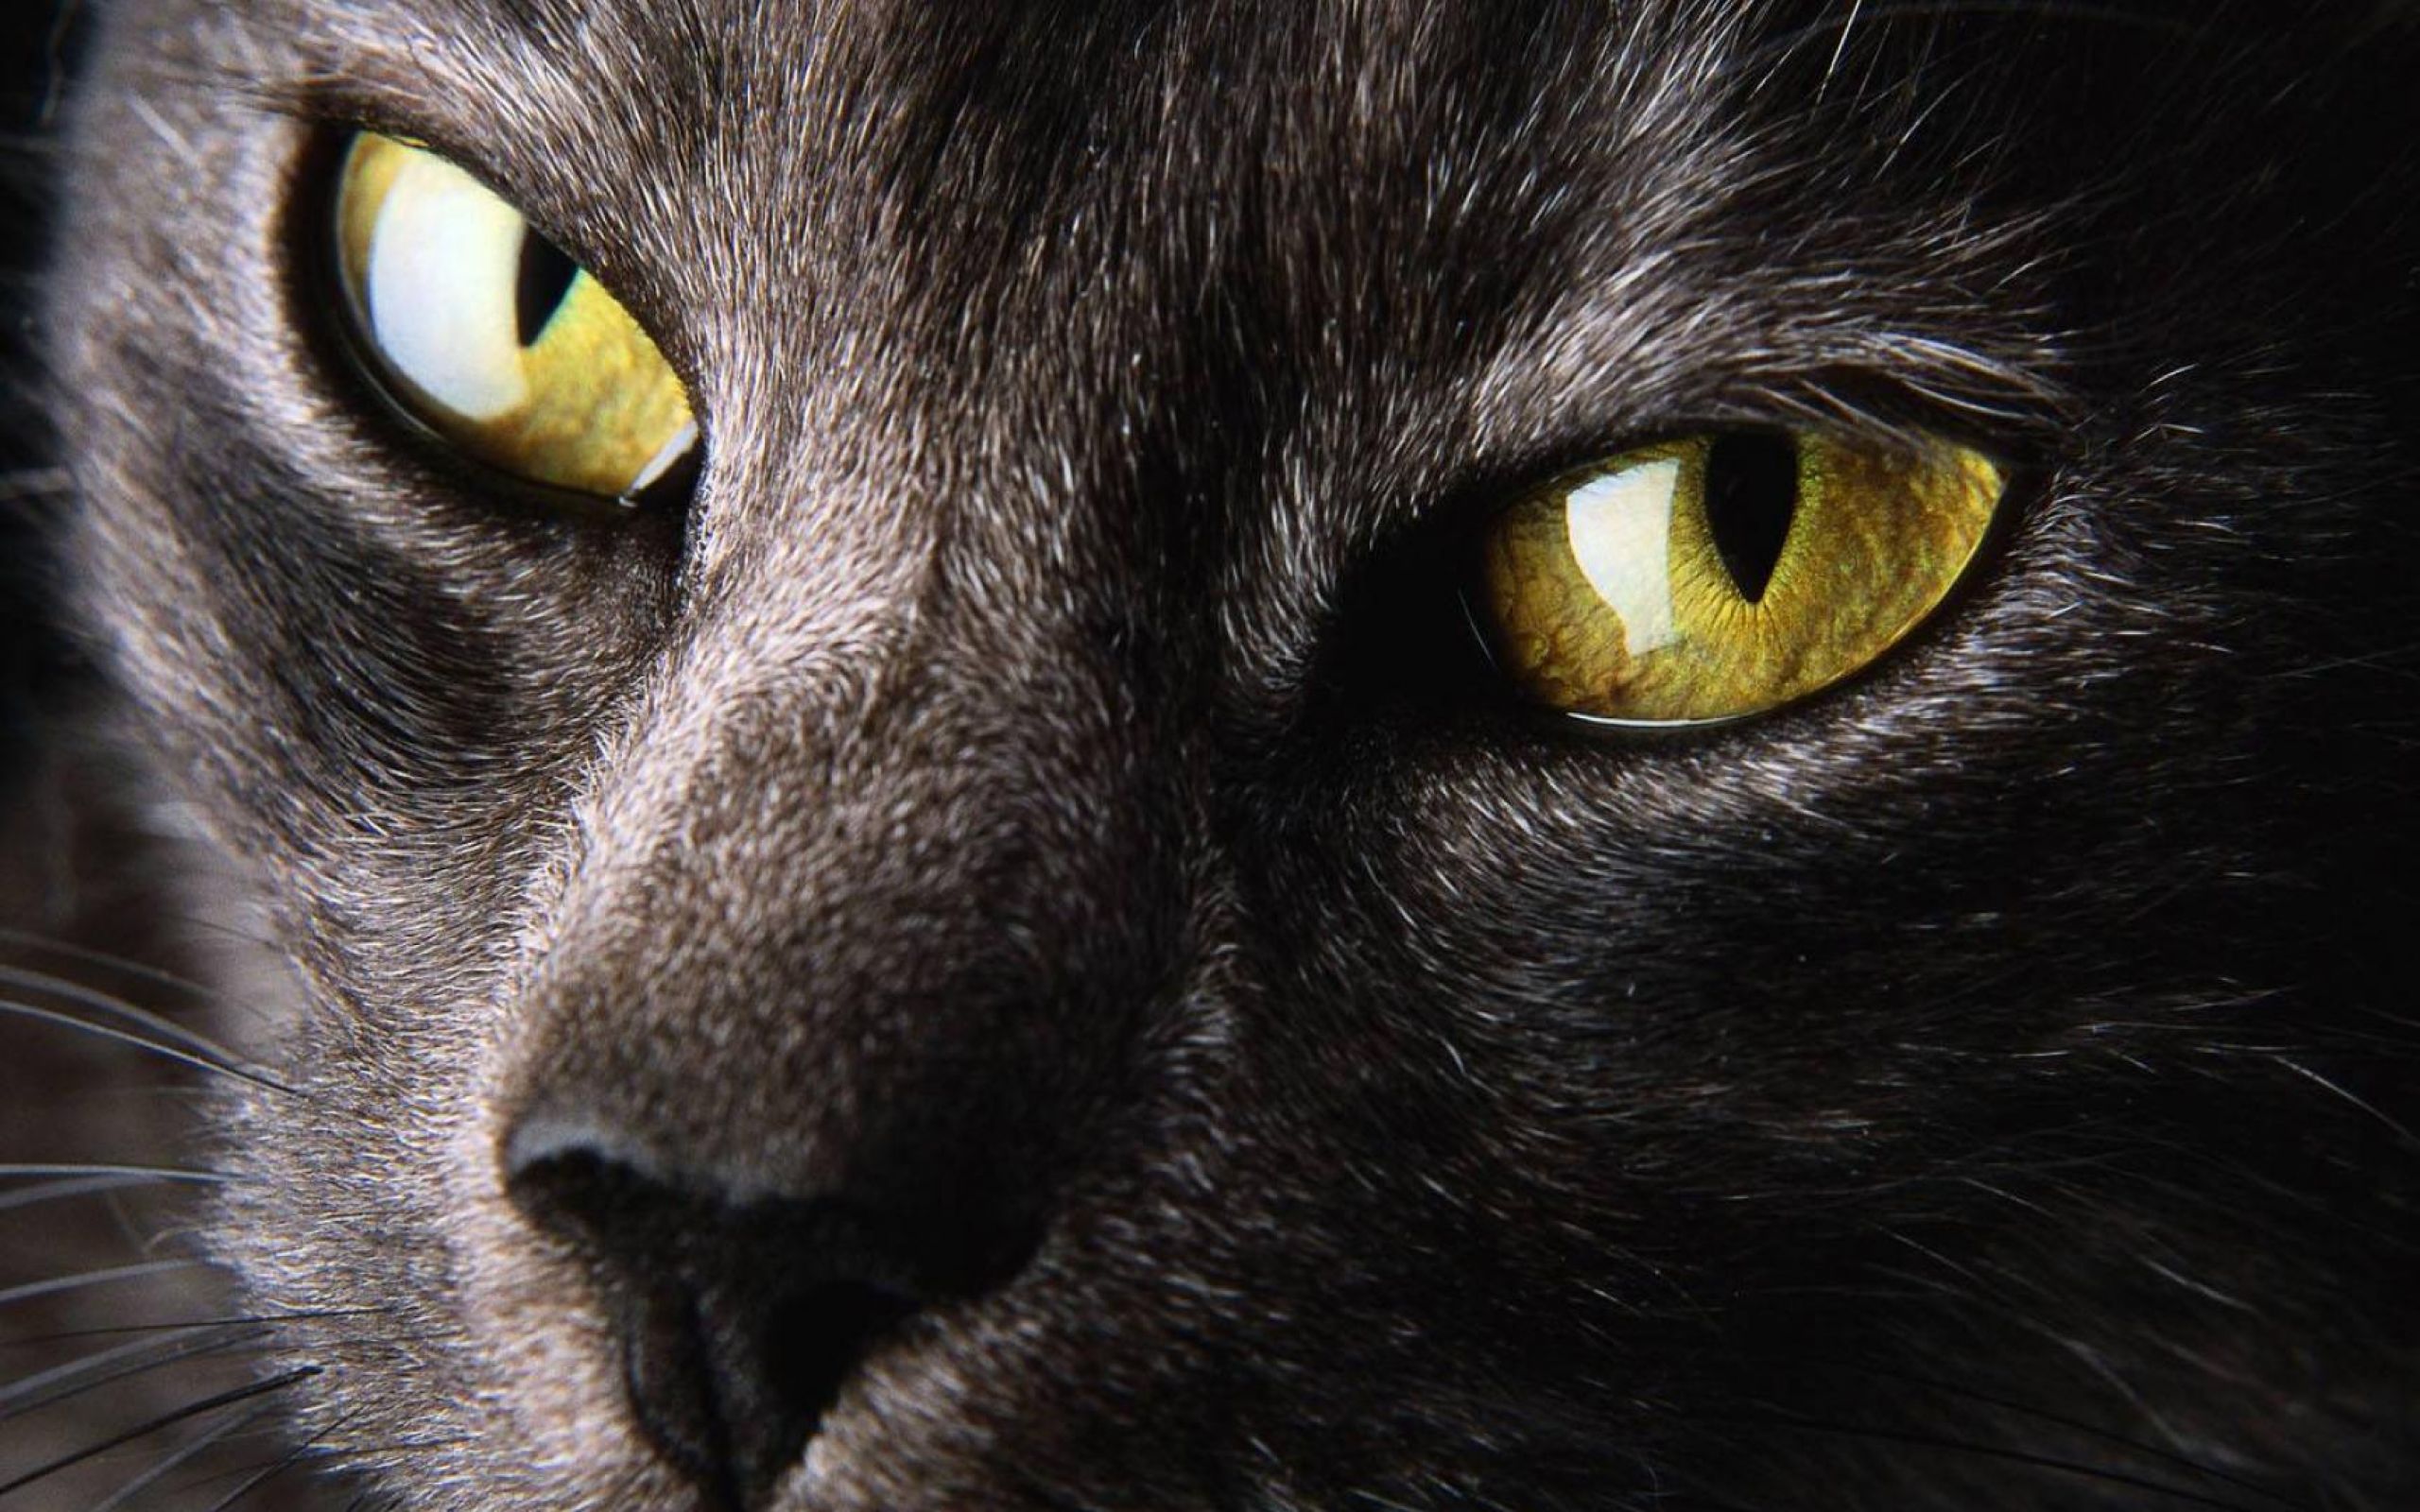 Фото на аву кошки. Глаза кошки. Кошка с желтыми глазами. Кошачий глаз. Взгляд кошки.